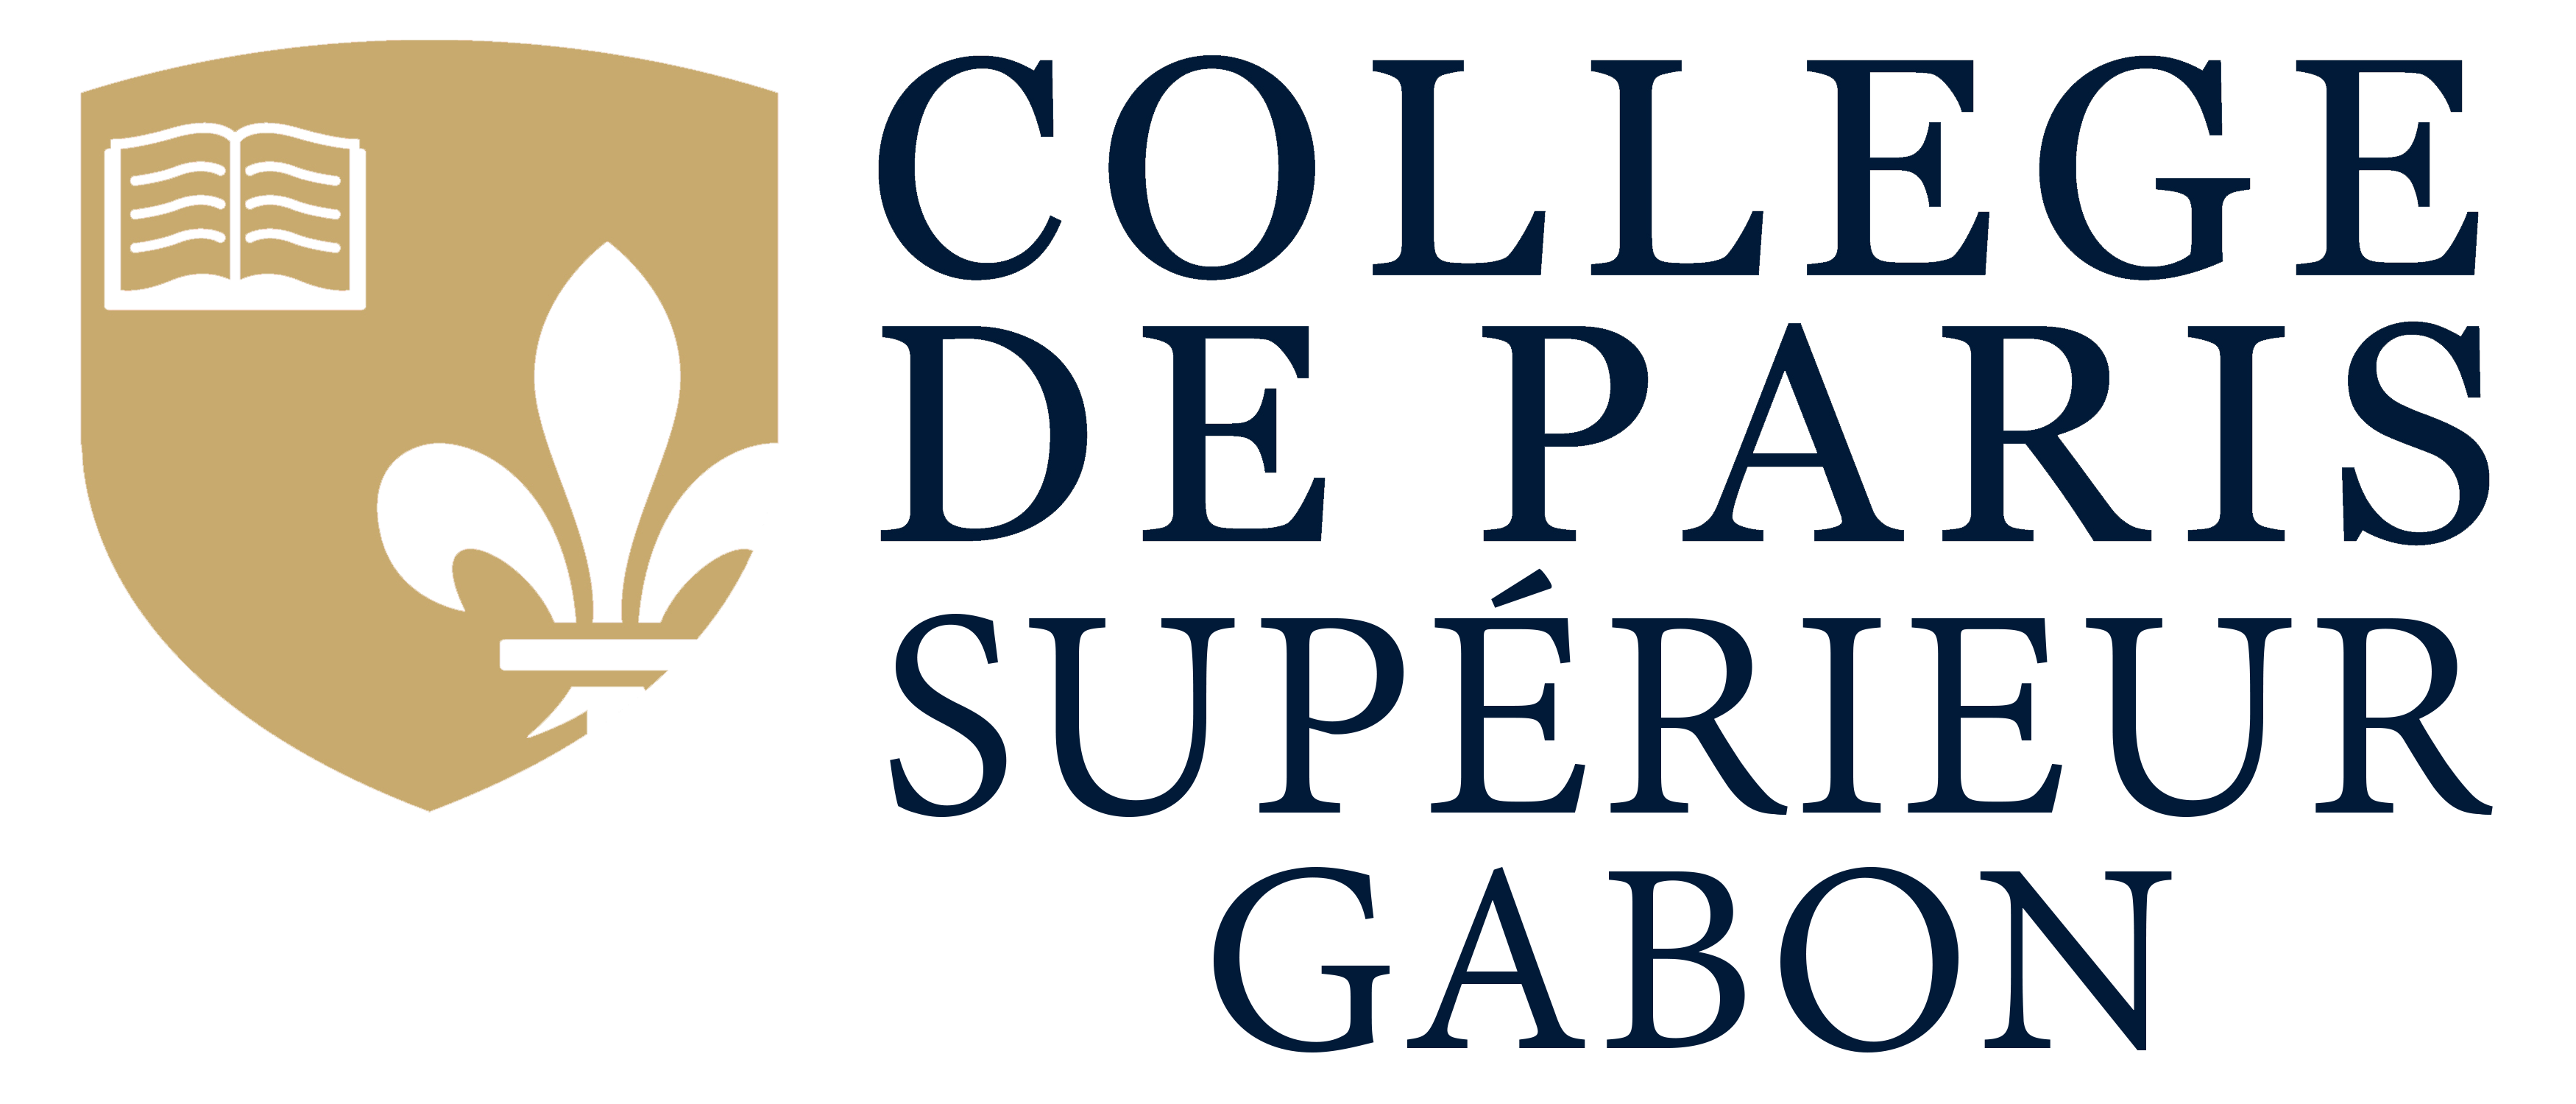 Admission | Collège de Paris Supérieur Gabon